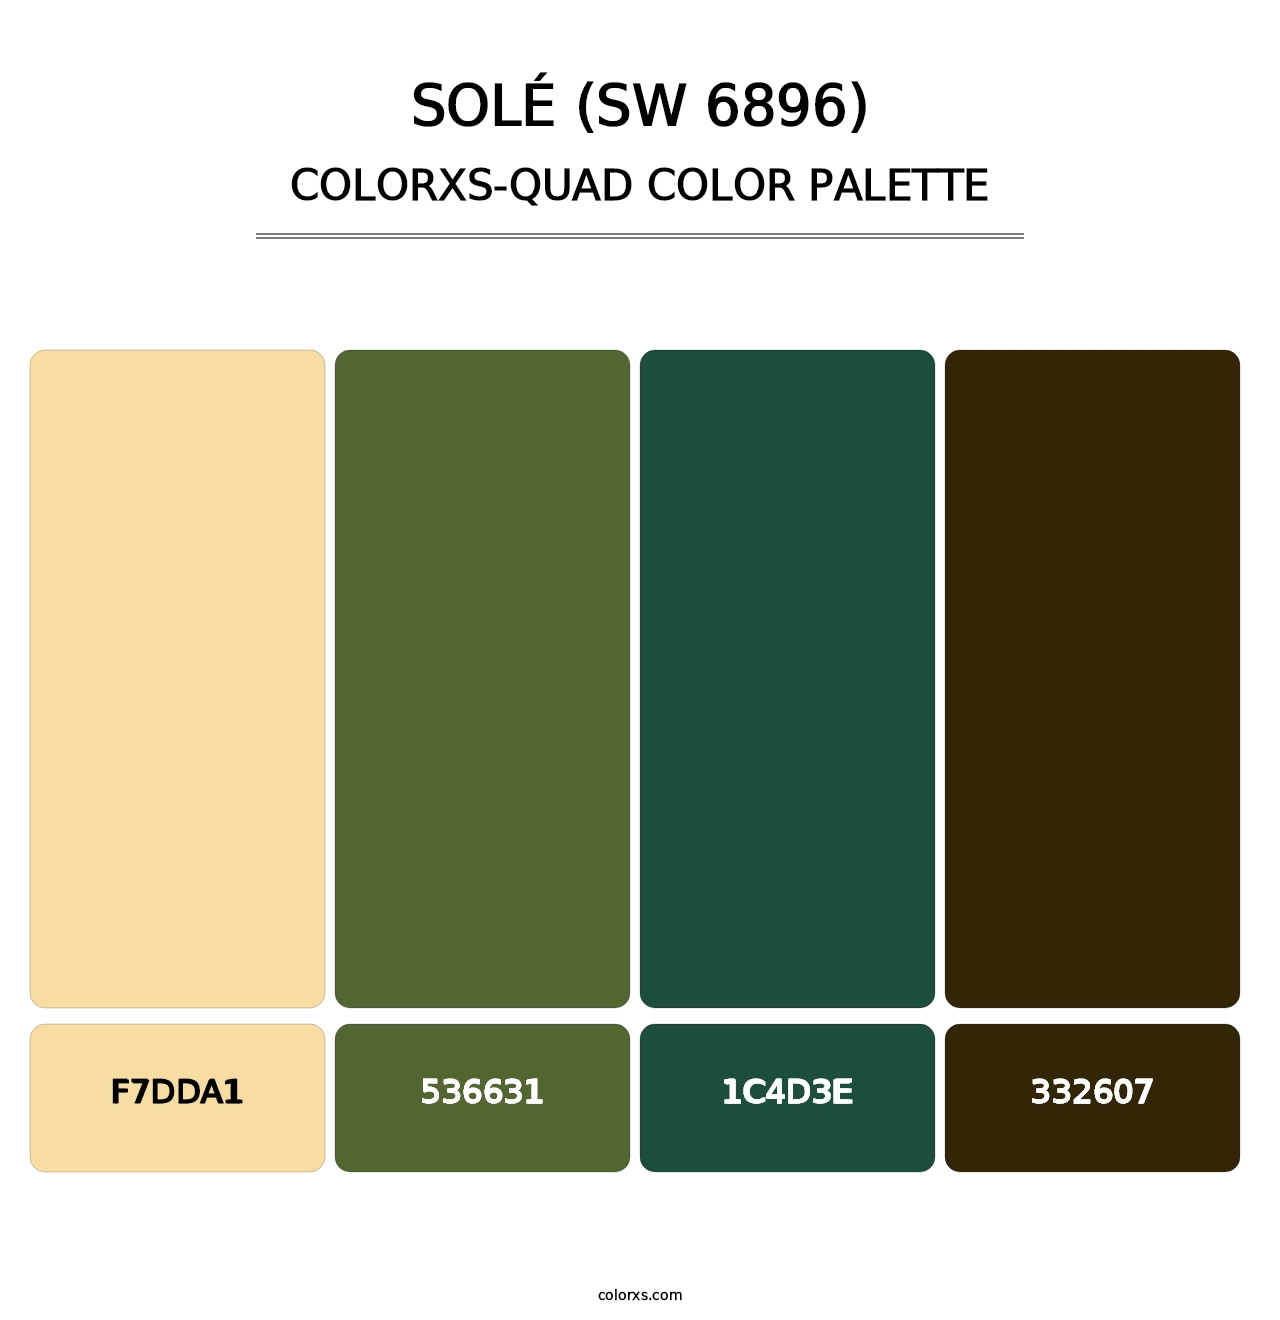 Solé (SW 6896) - Colorxs Quad Palette